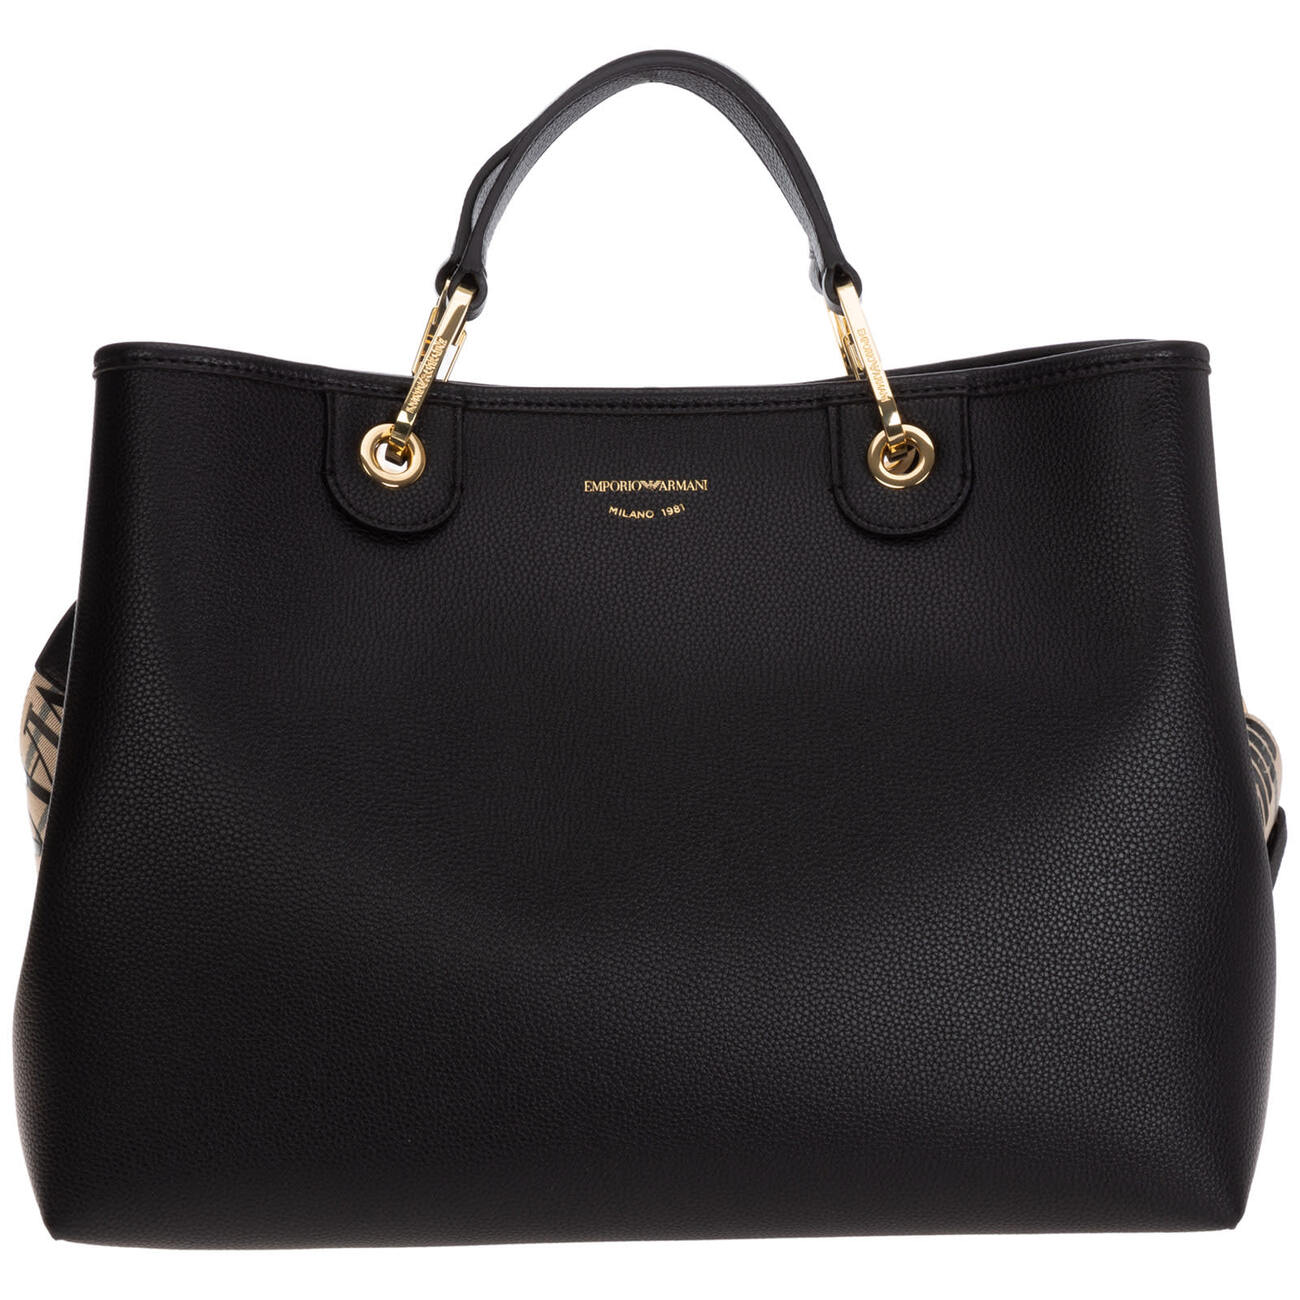 Emporio Armani Myea Handbags in black